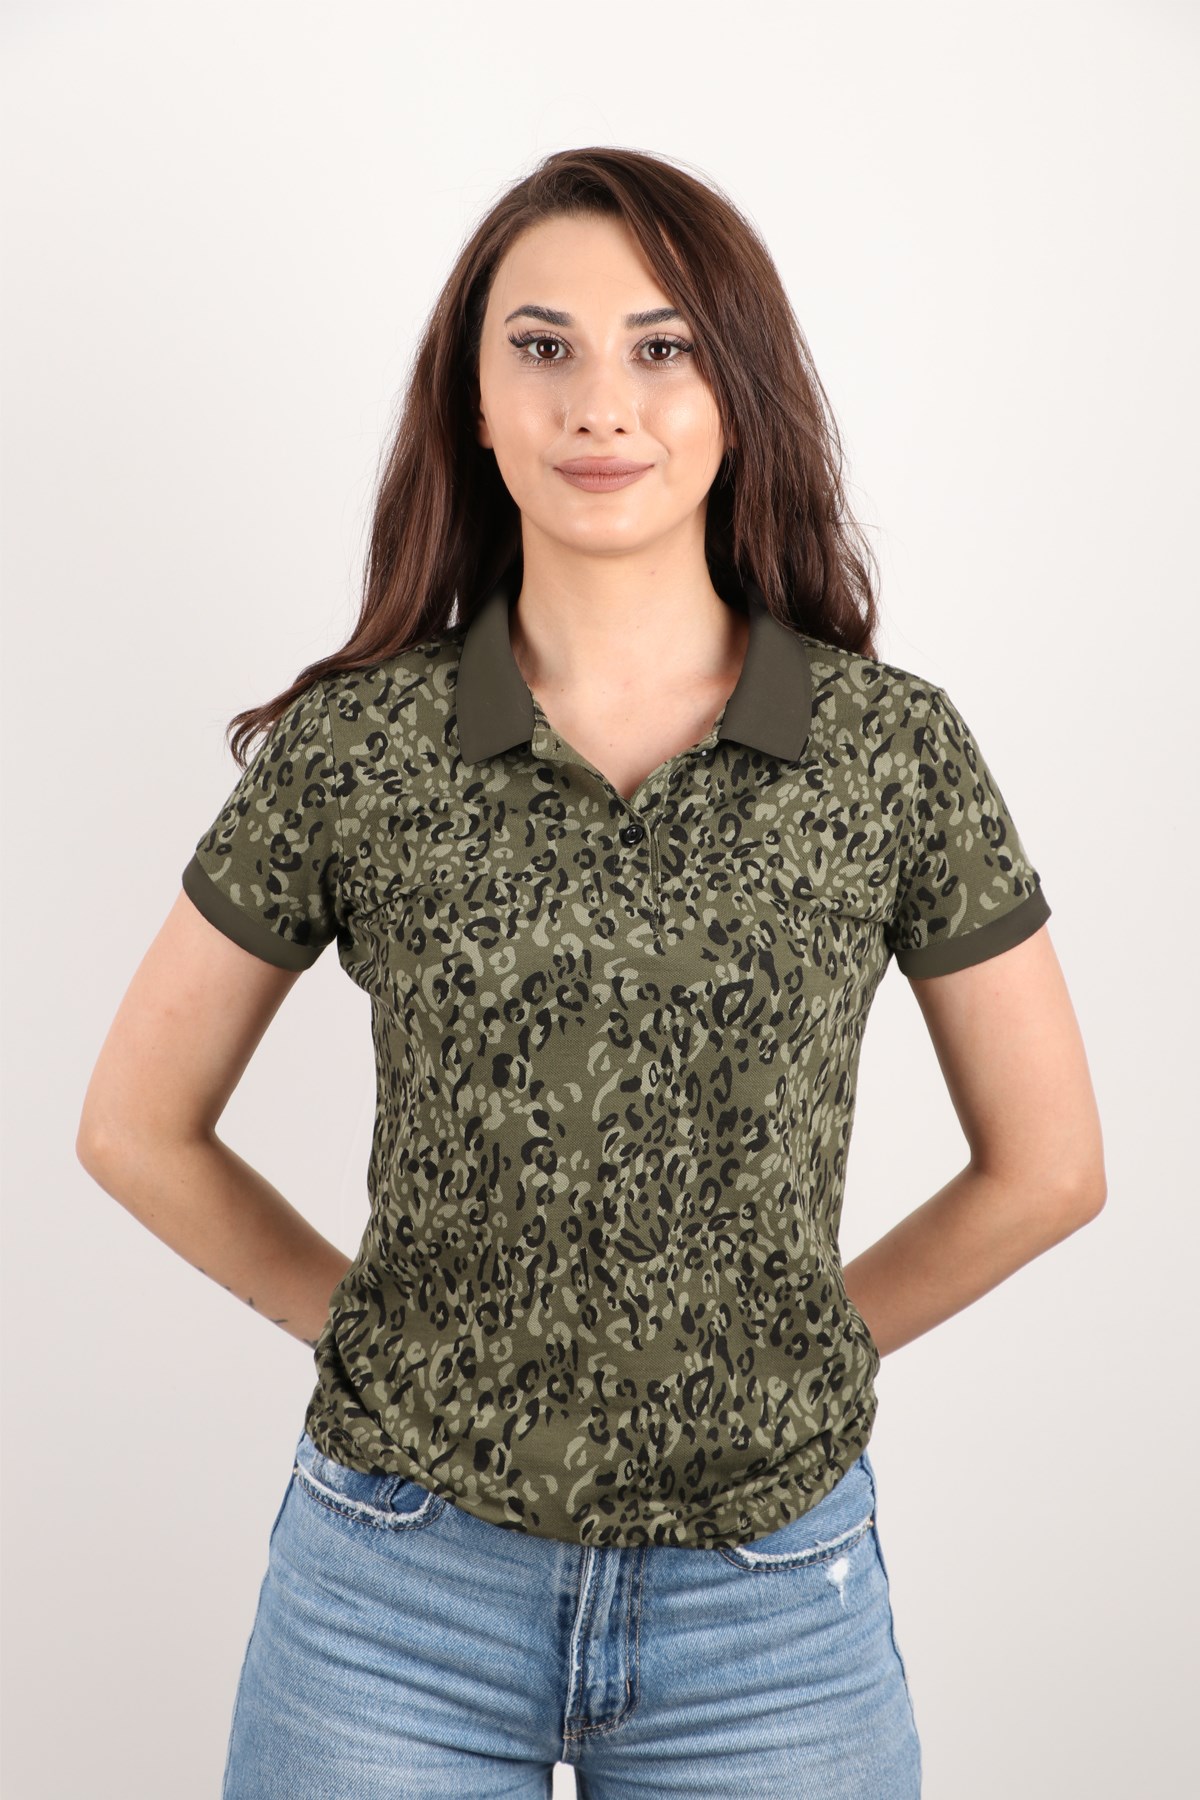 Kadın Polo Yaka Desenli T-shirt | Polo Yaka Tshirt Modelleri - RICH |  rich.com.tr